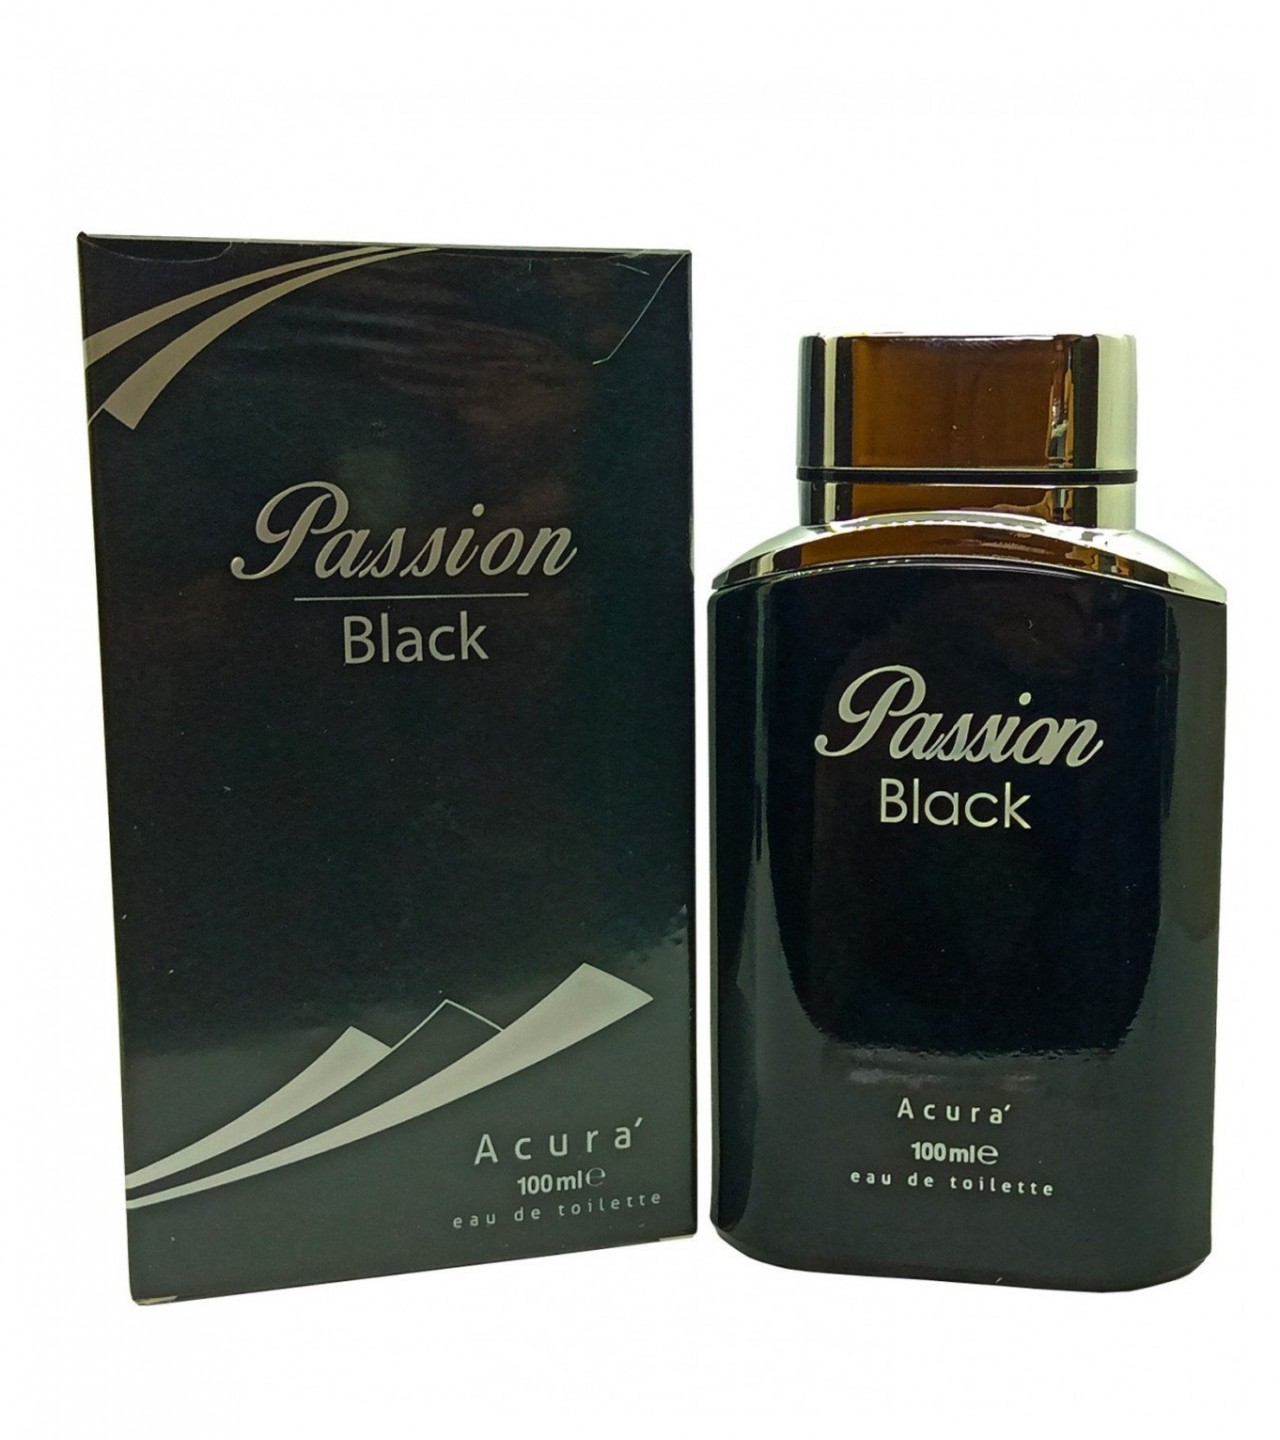 Acura Passion Perfume For Men - Eau De Toilette - 100 ml - Black